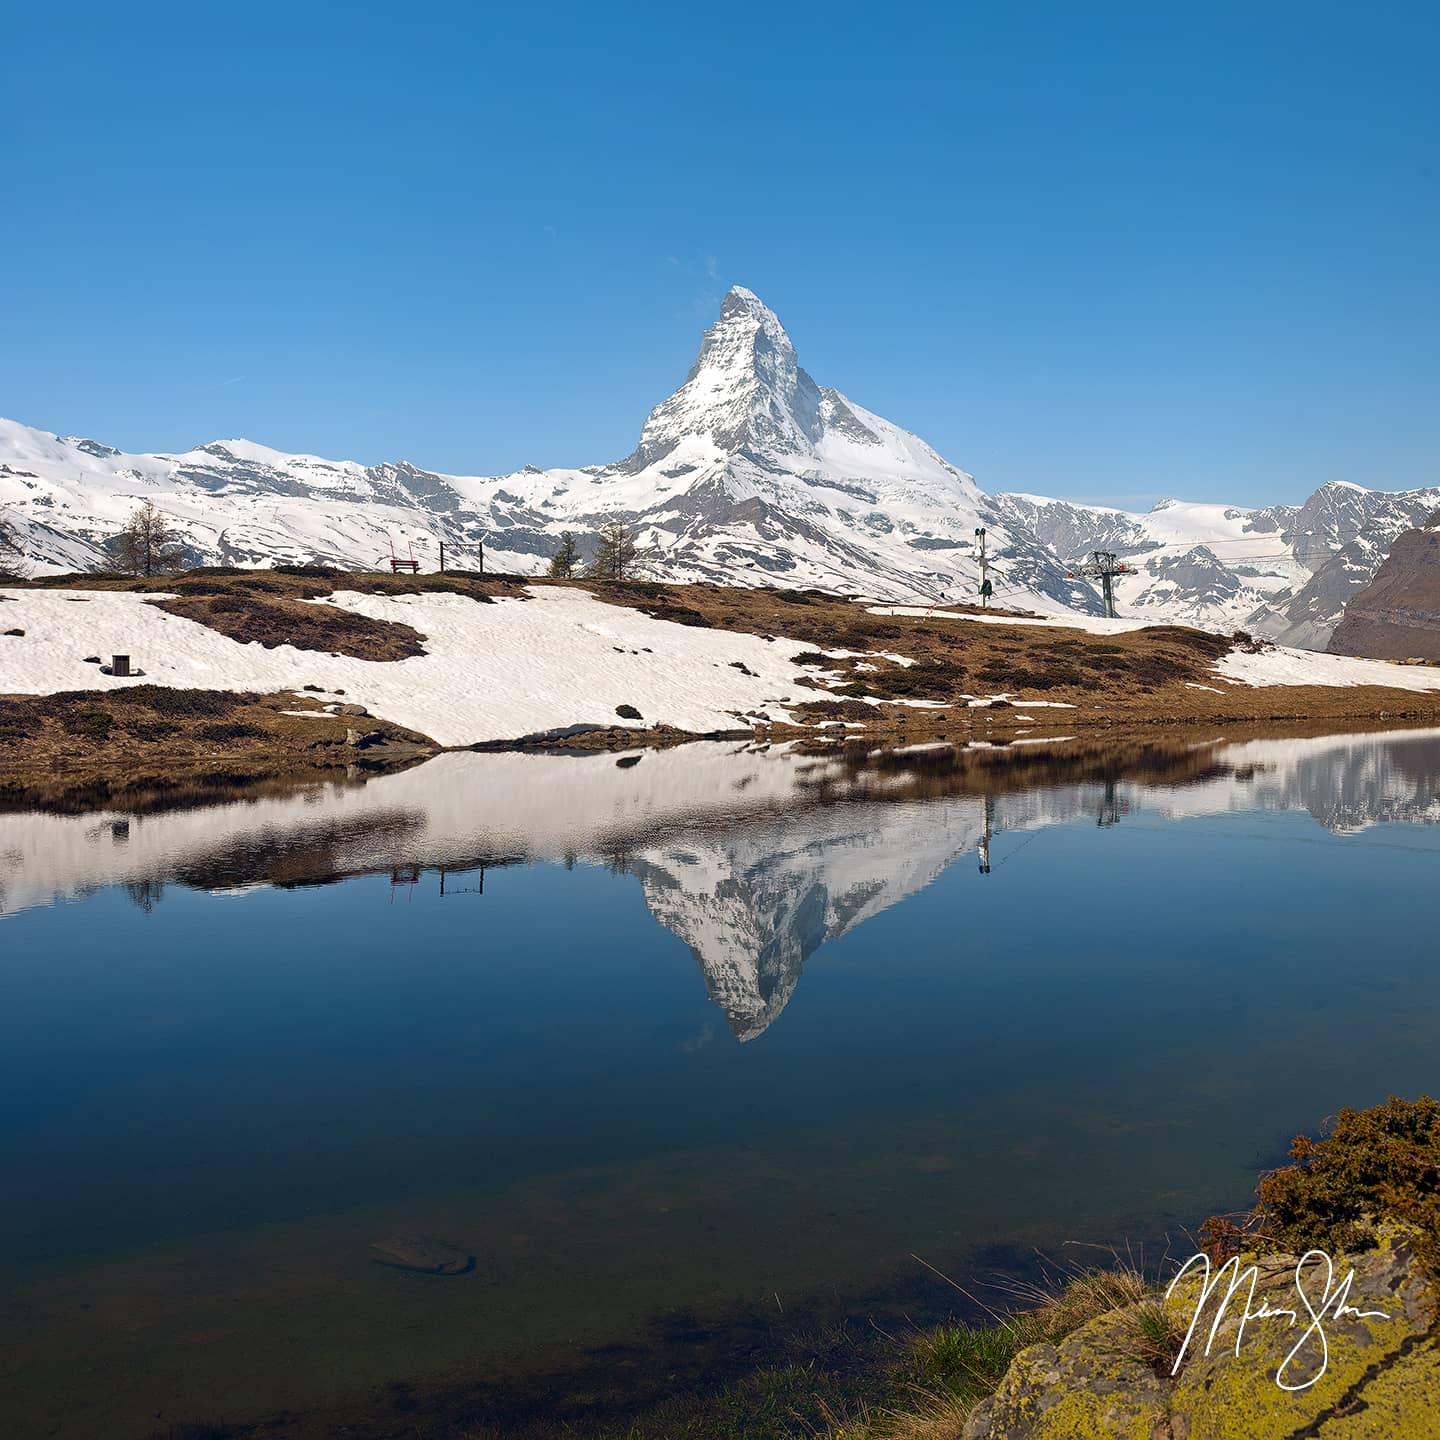 Leisee Matterhorn Reflection - Leisee, Sunnegga, Zermatt, Switzerland